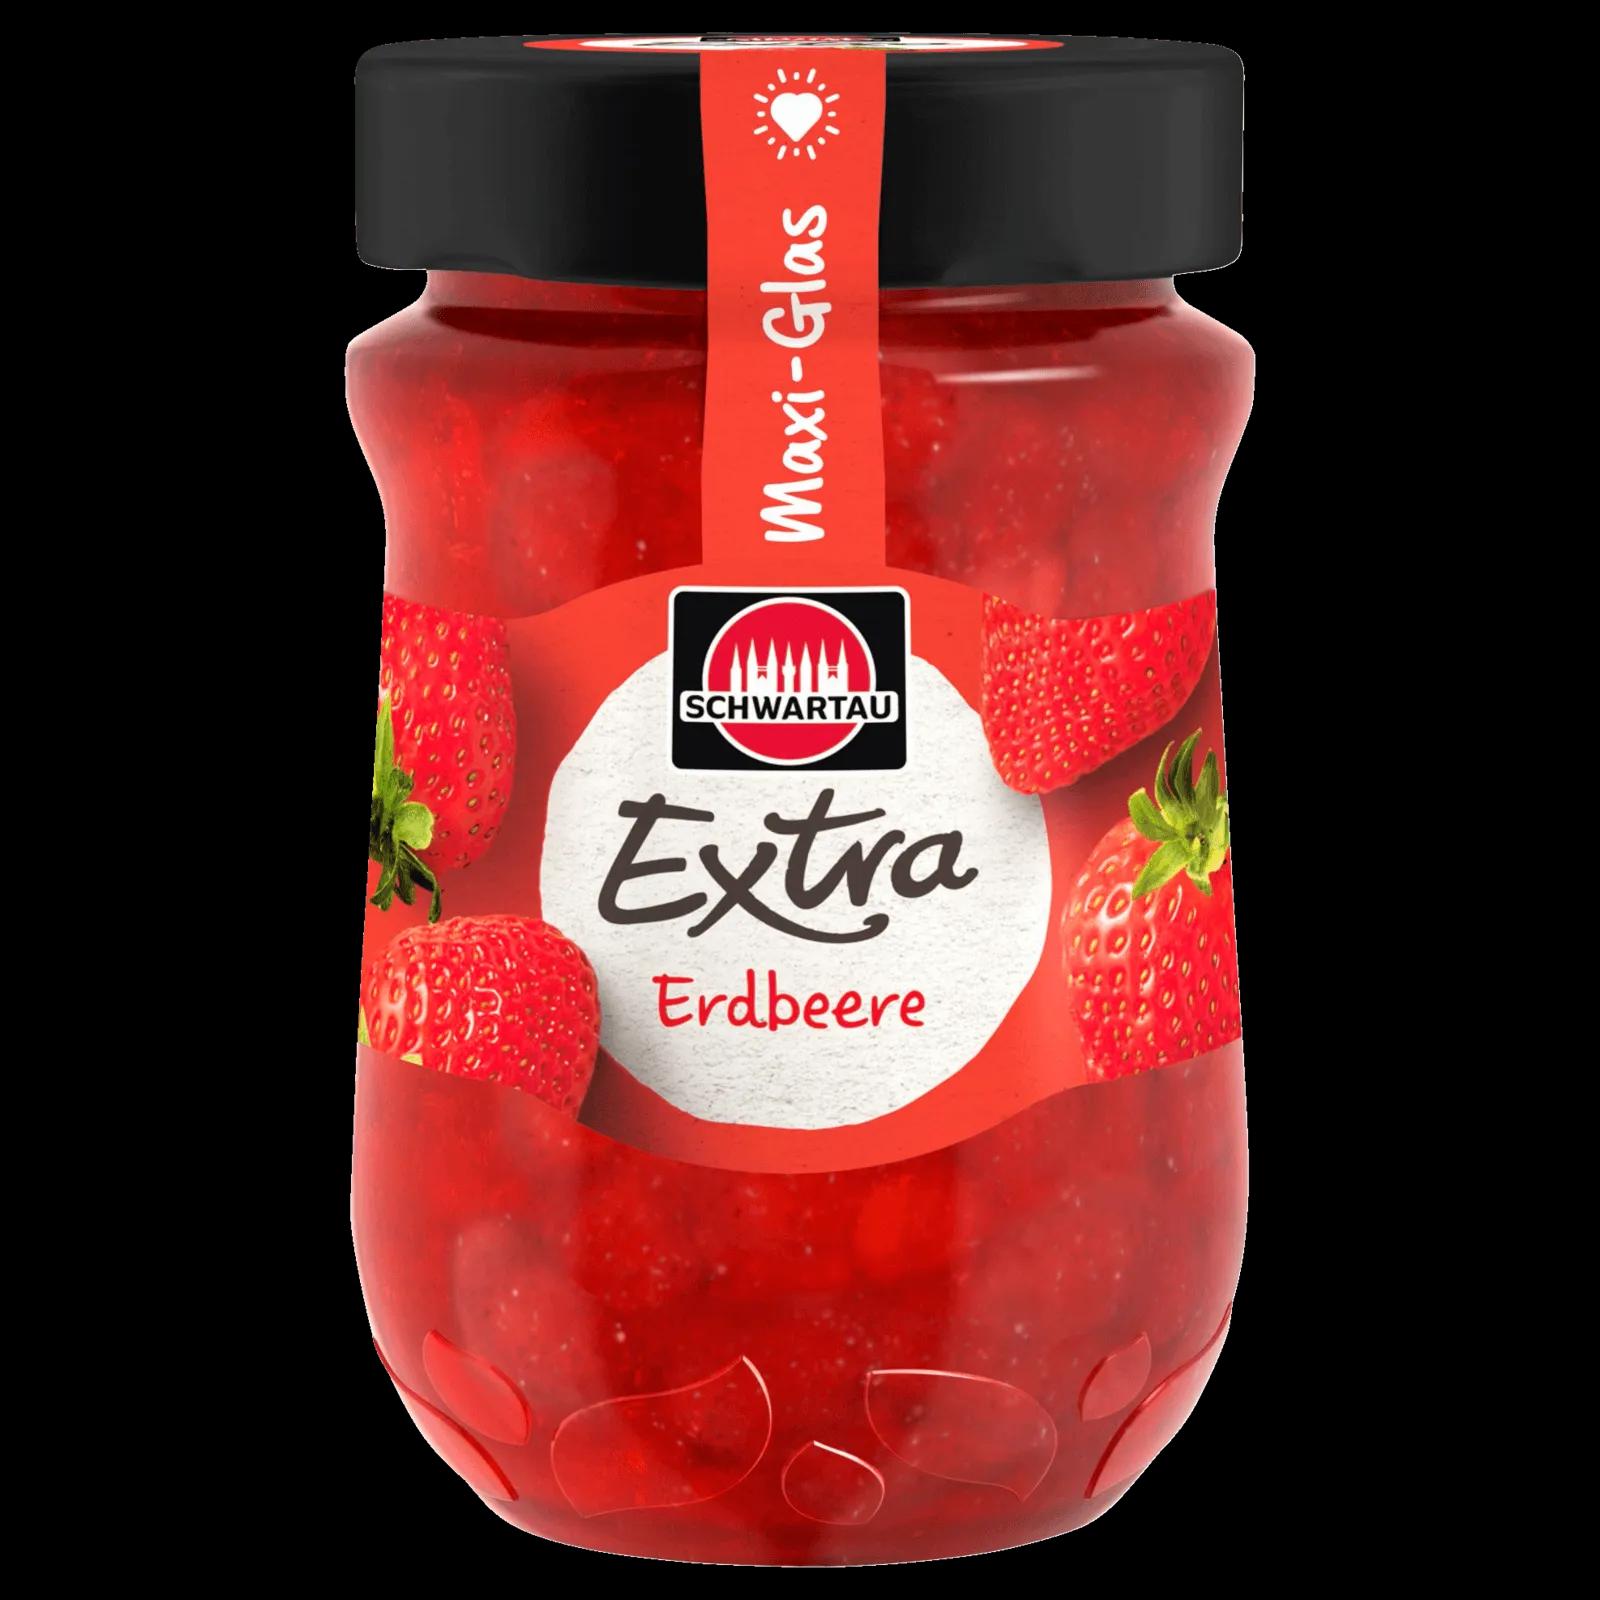 Schwartau Extra Erdbeere Konfitüre 600g bei REWE online bestellen!